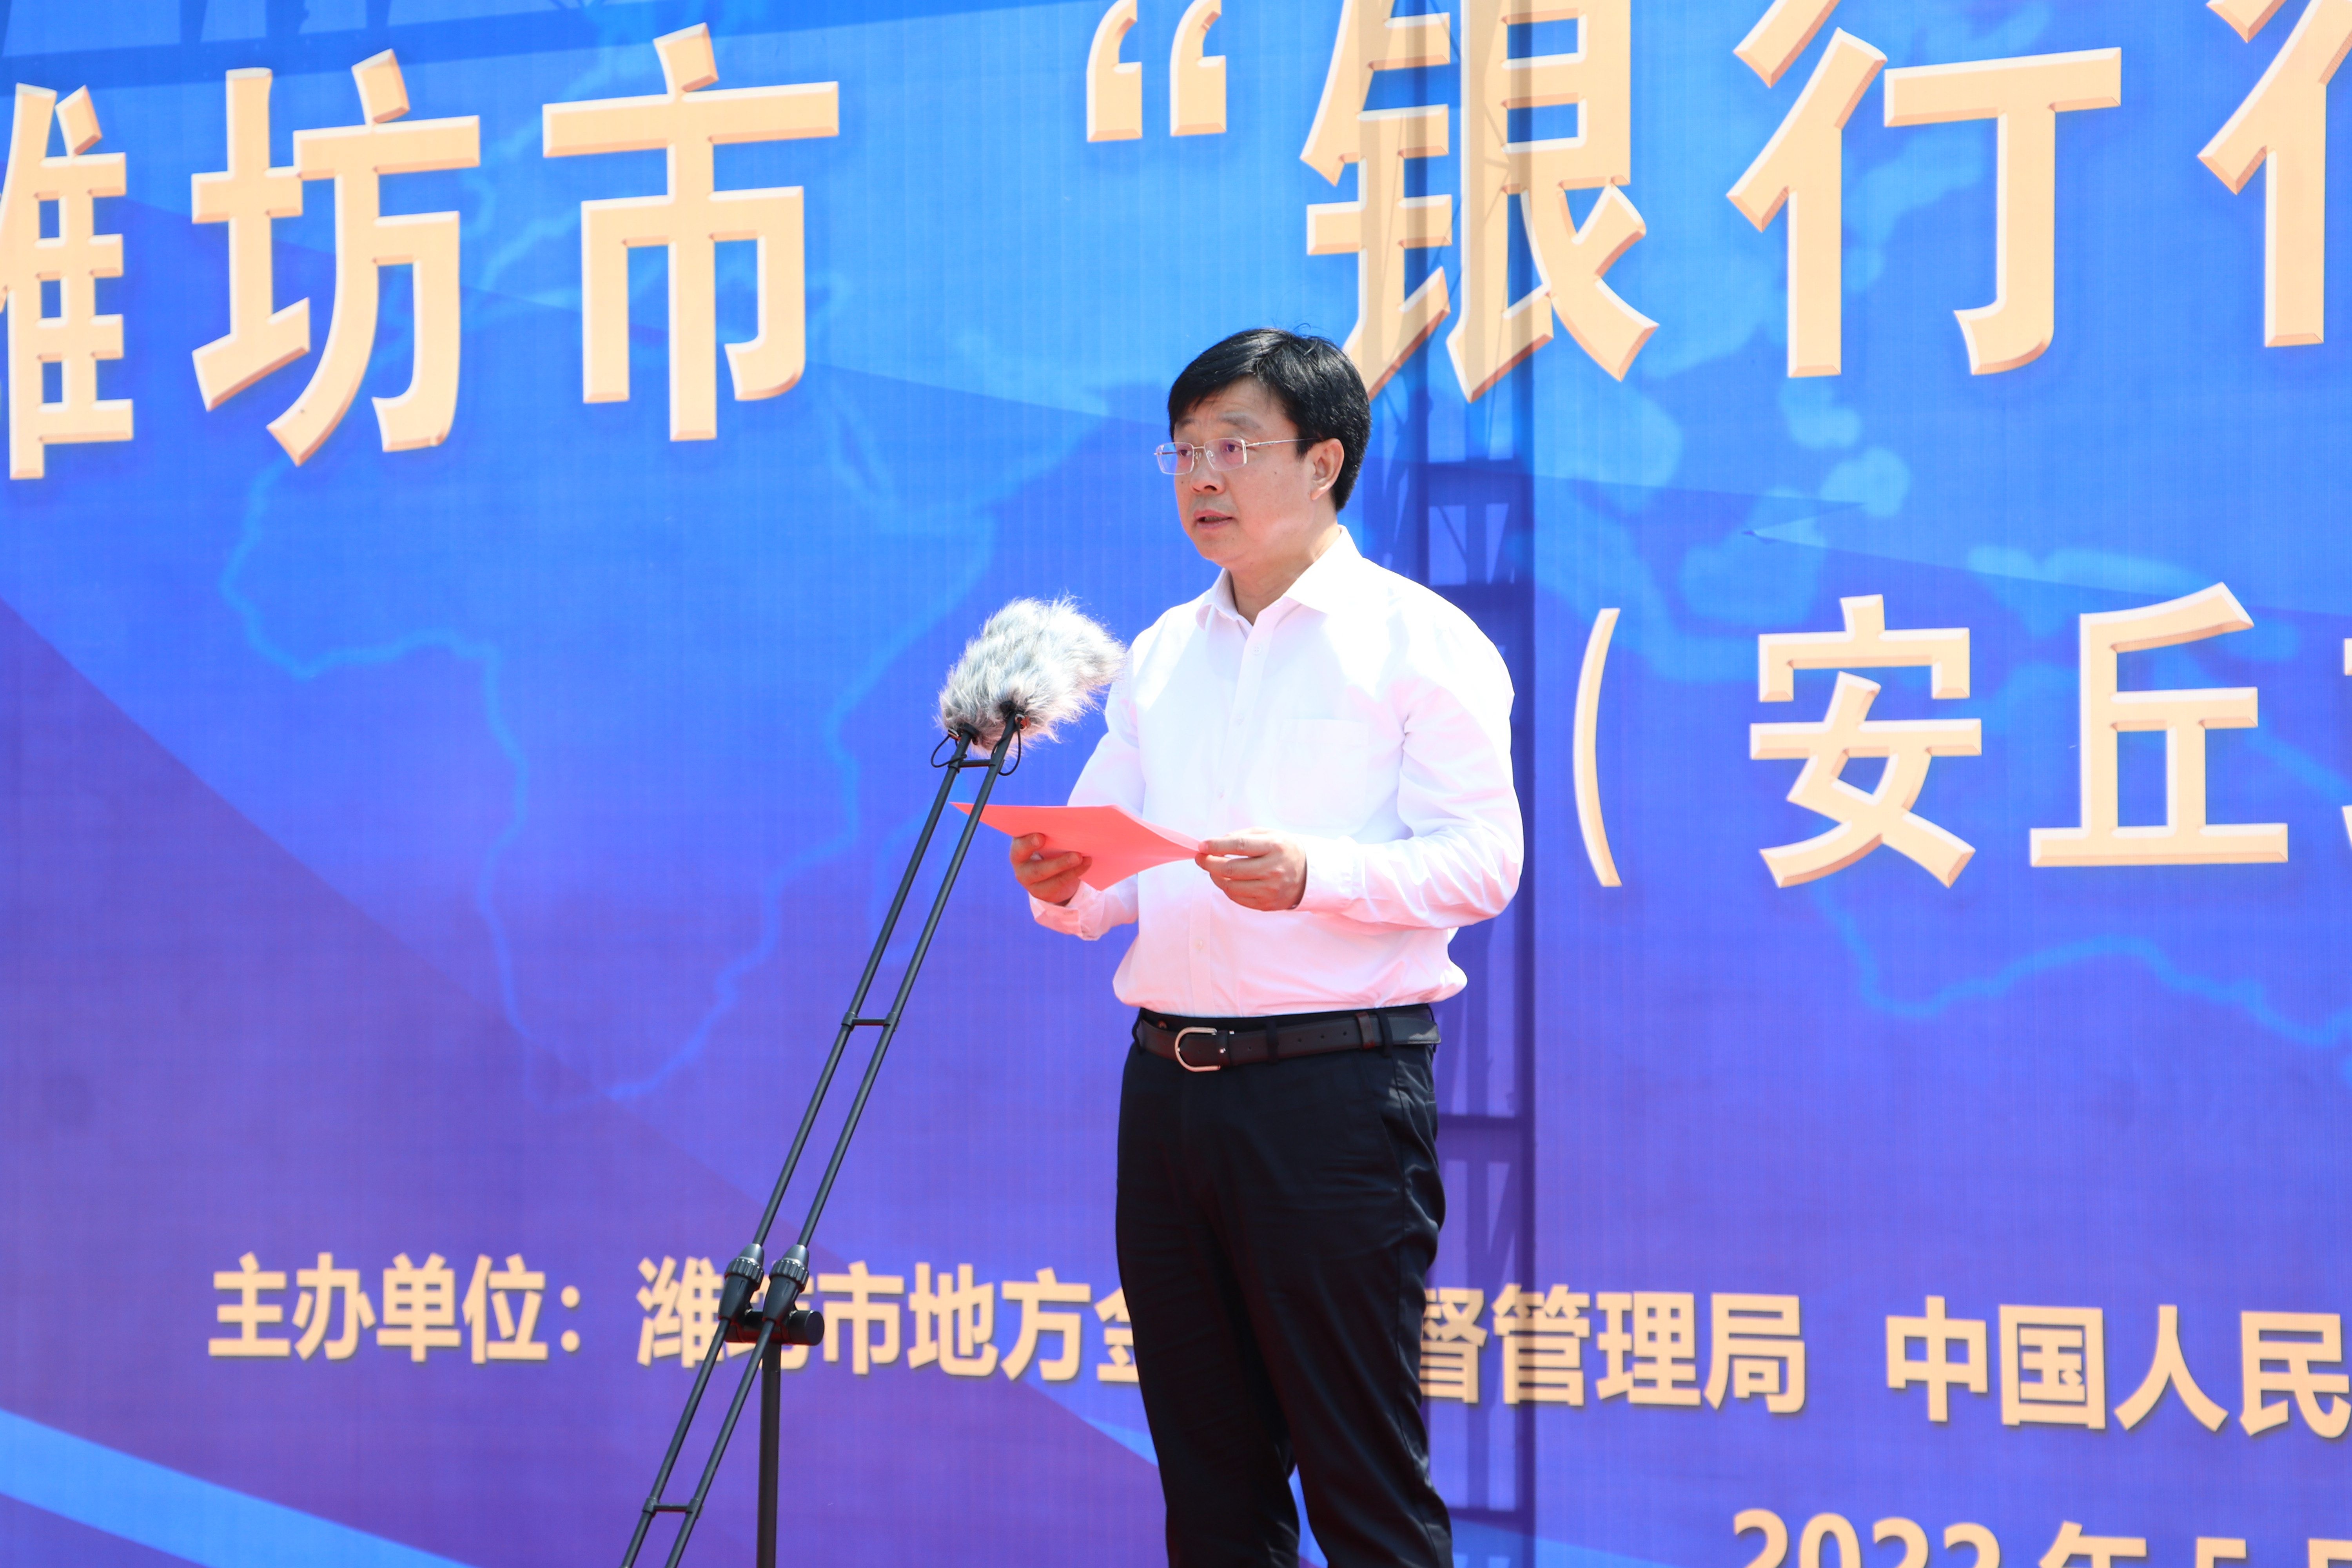 潍坊市市长莅临山东蓝想出席“潍坊市银行行长项目行”启动仪式